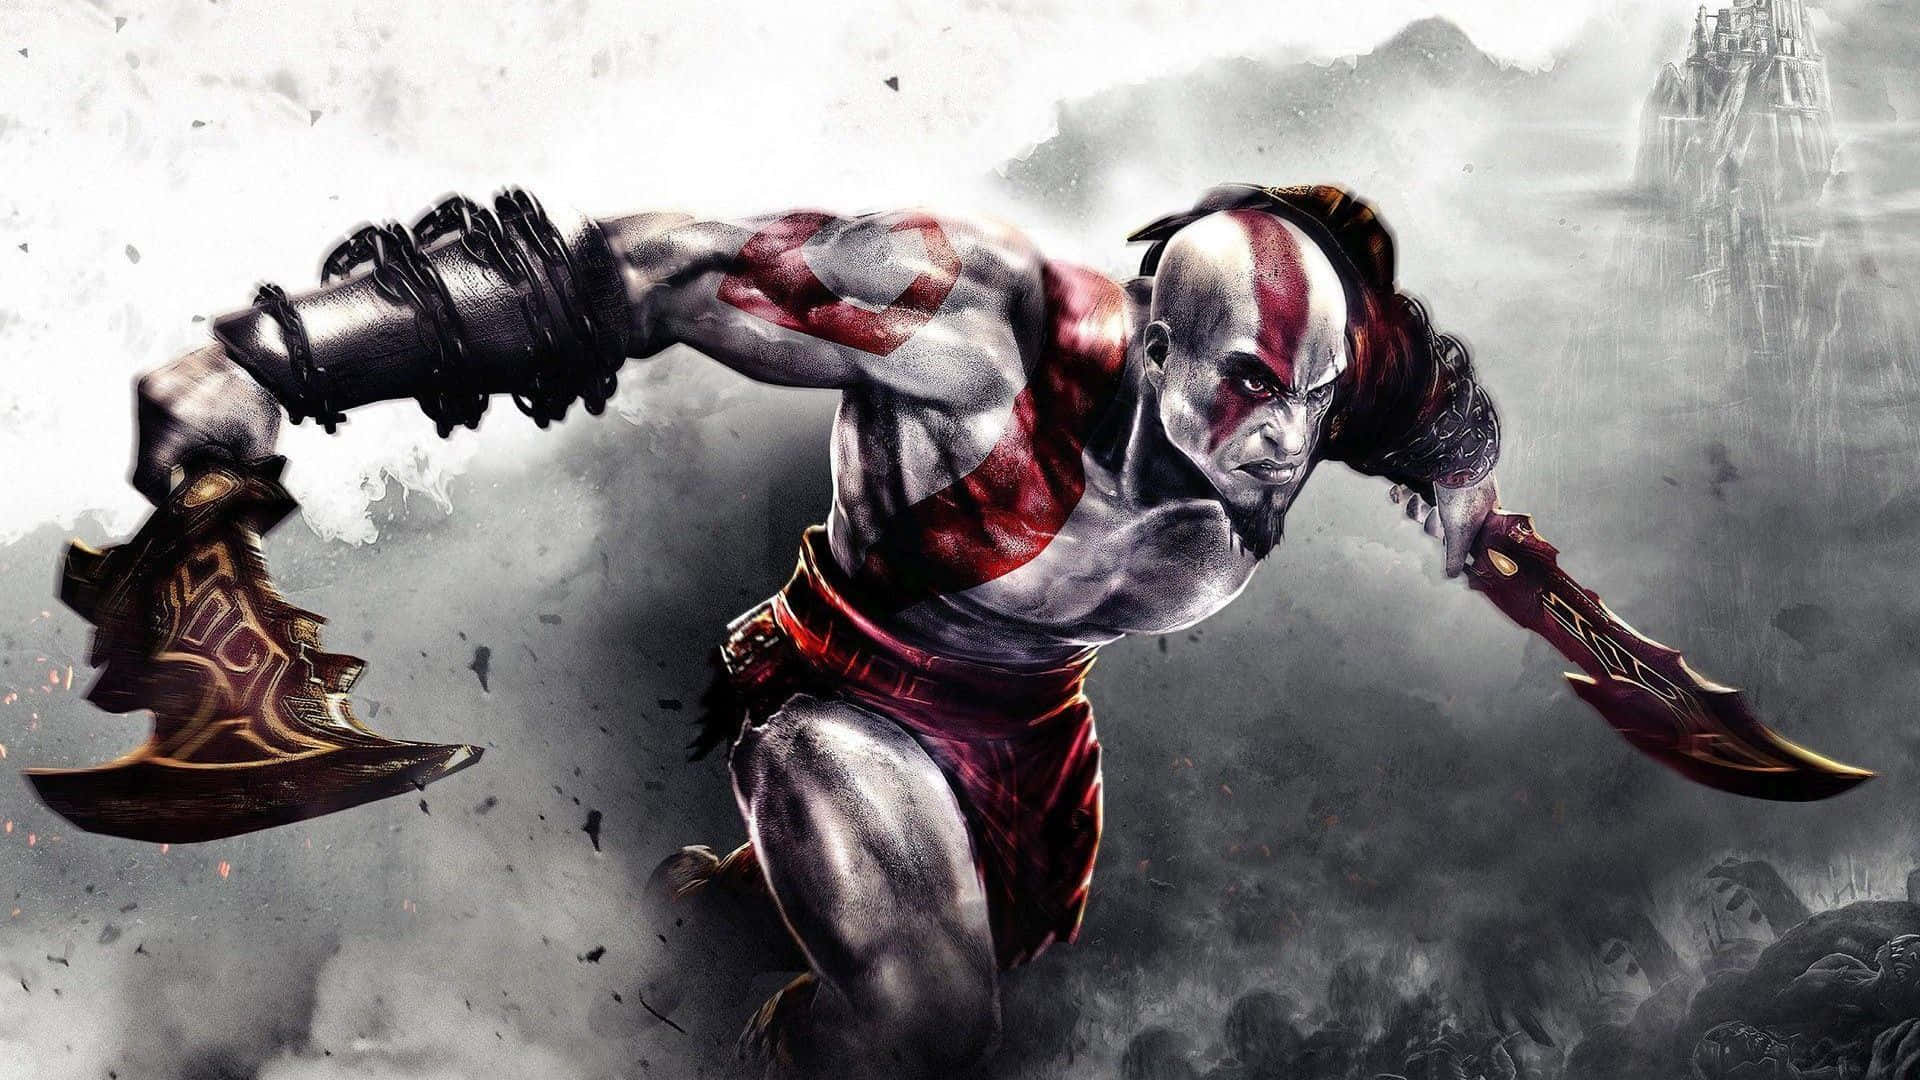 Kratos on a revenge mission in God Of War 3 Wallpaper